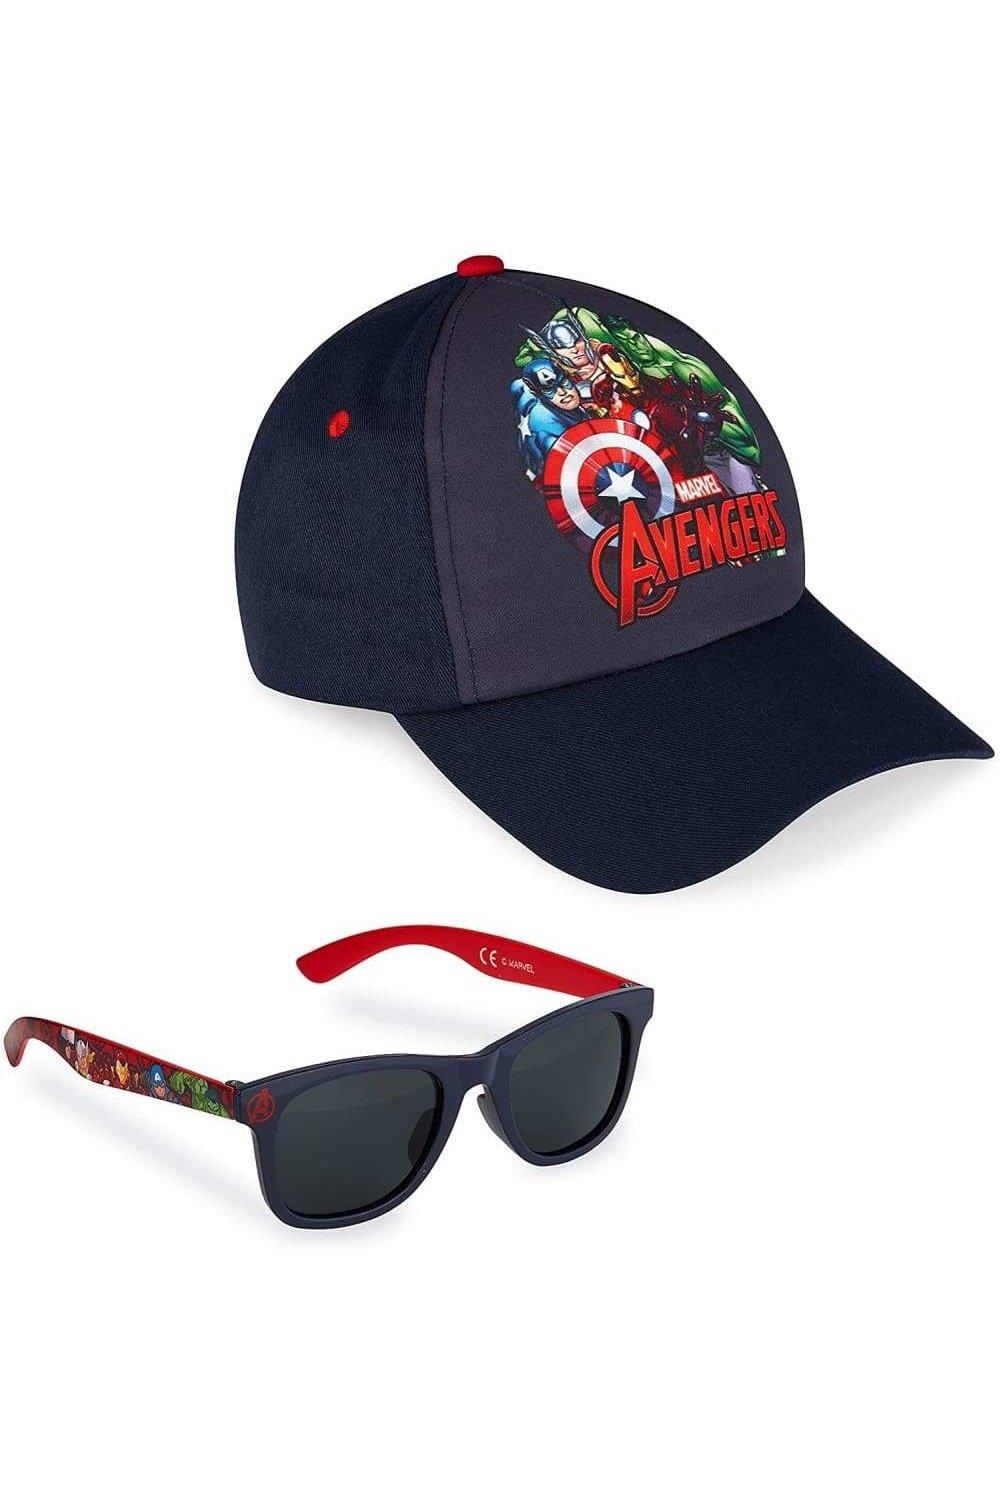 Кепка Мстителей и солнцезащитные очки Marvel, синий бейсболка и солнцезащитные очки chase paw patrol синий